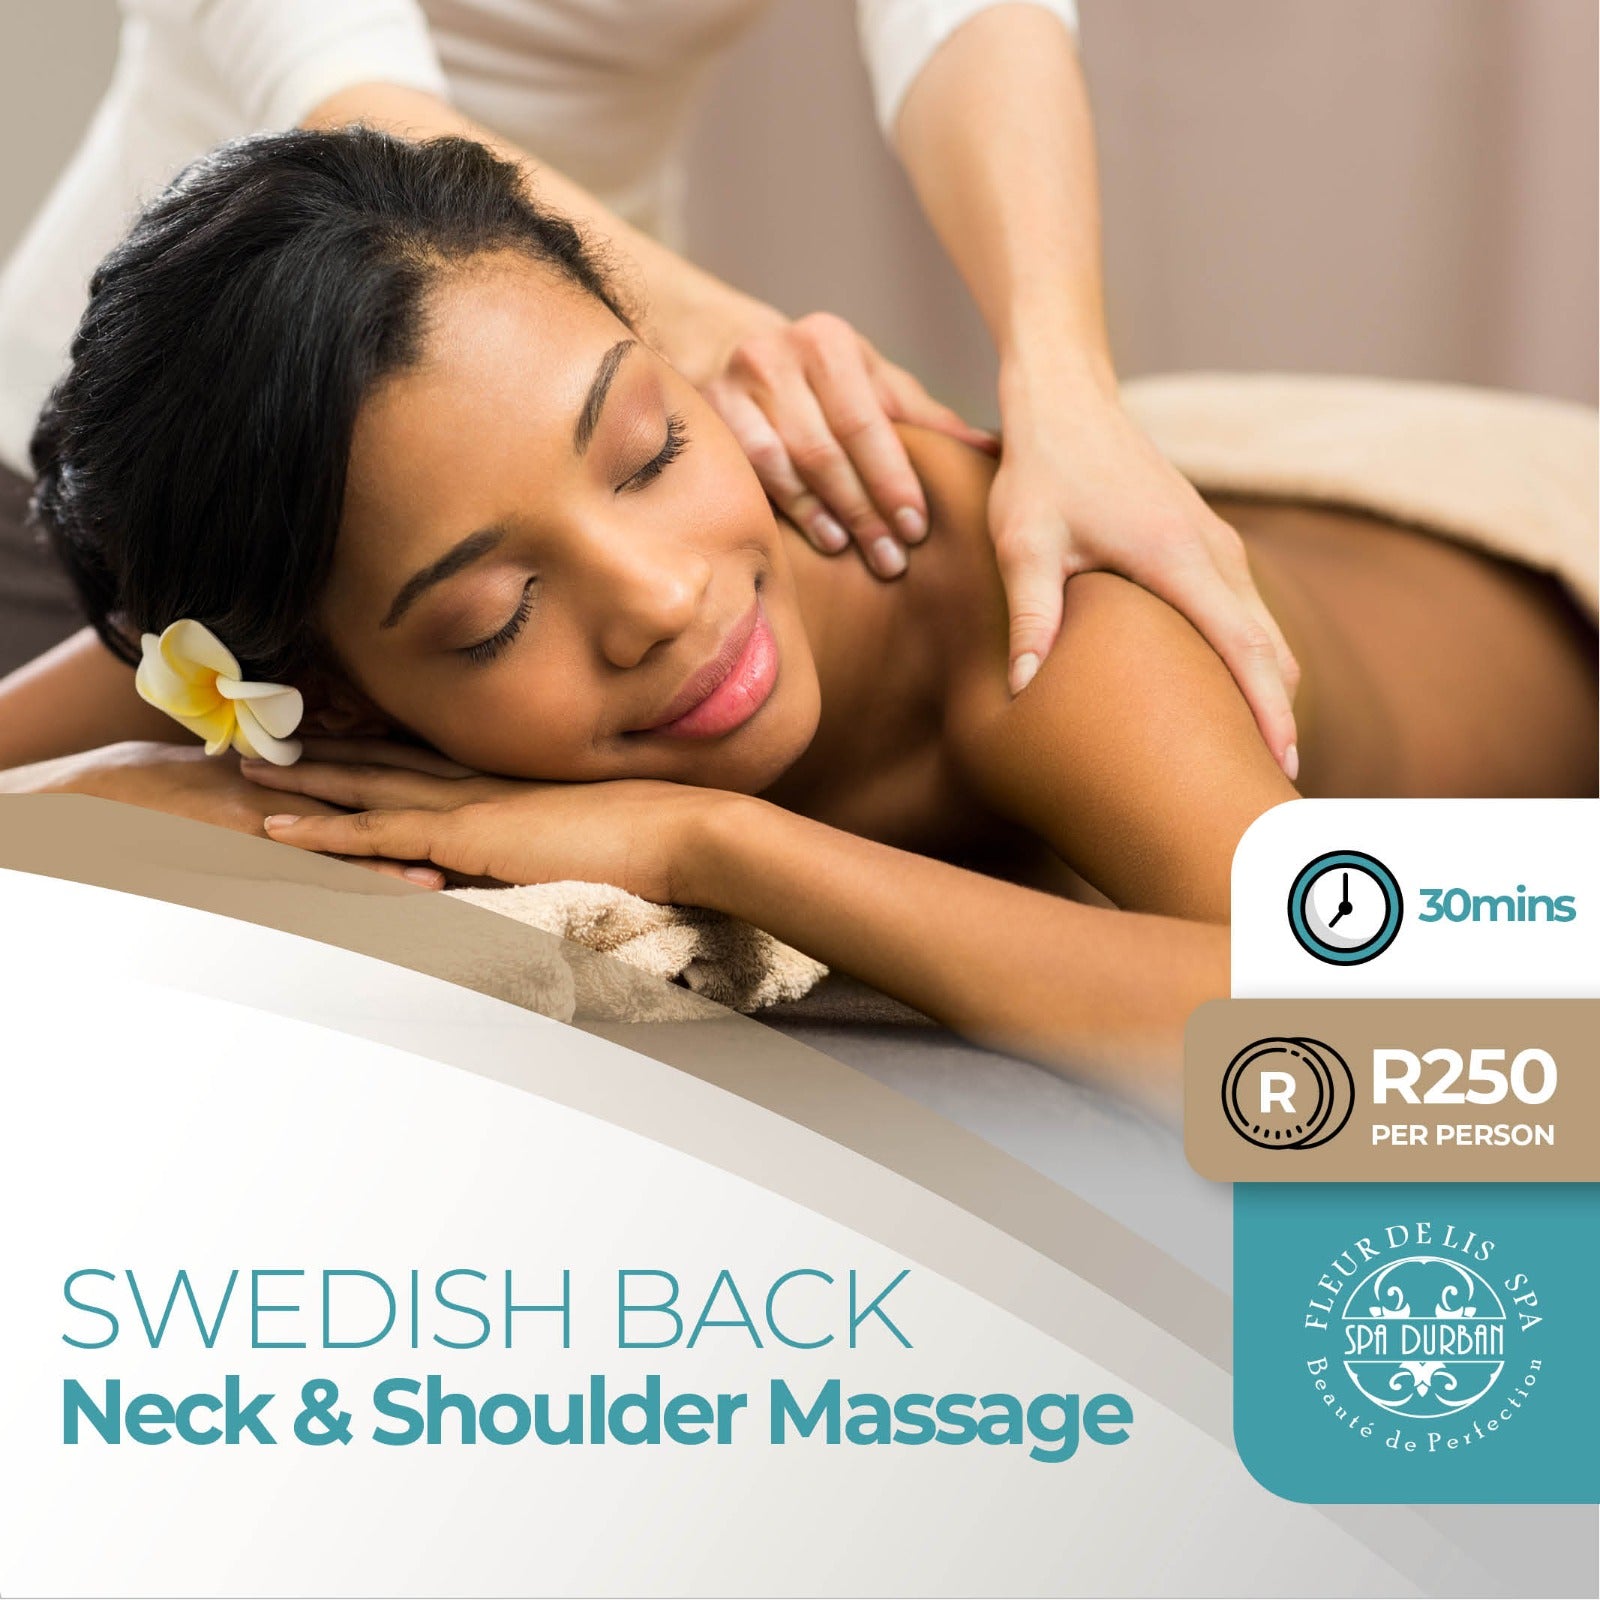 60min Back, Neck and Shoulder Massage